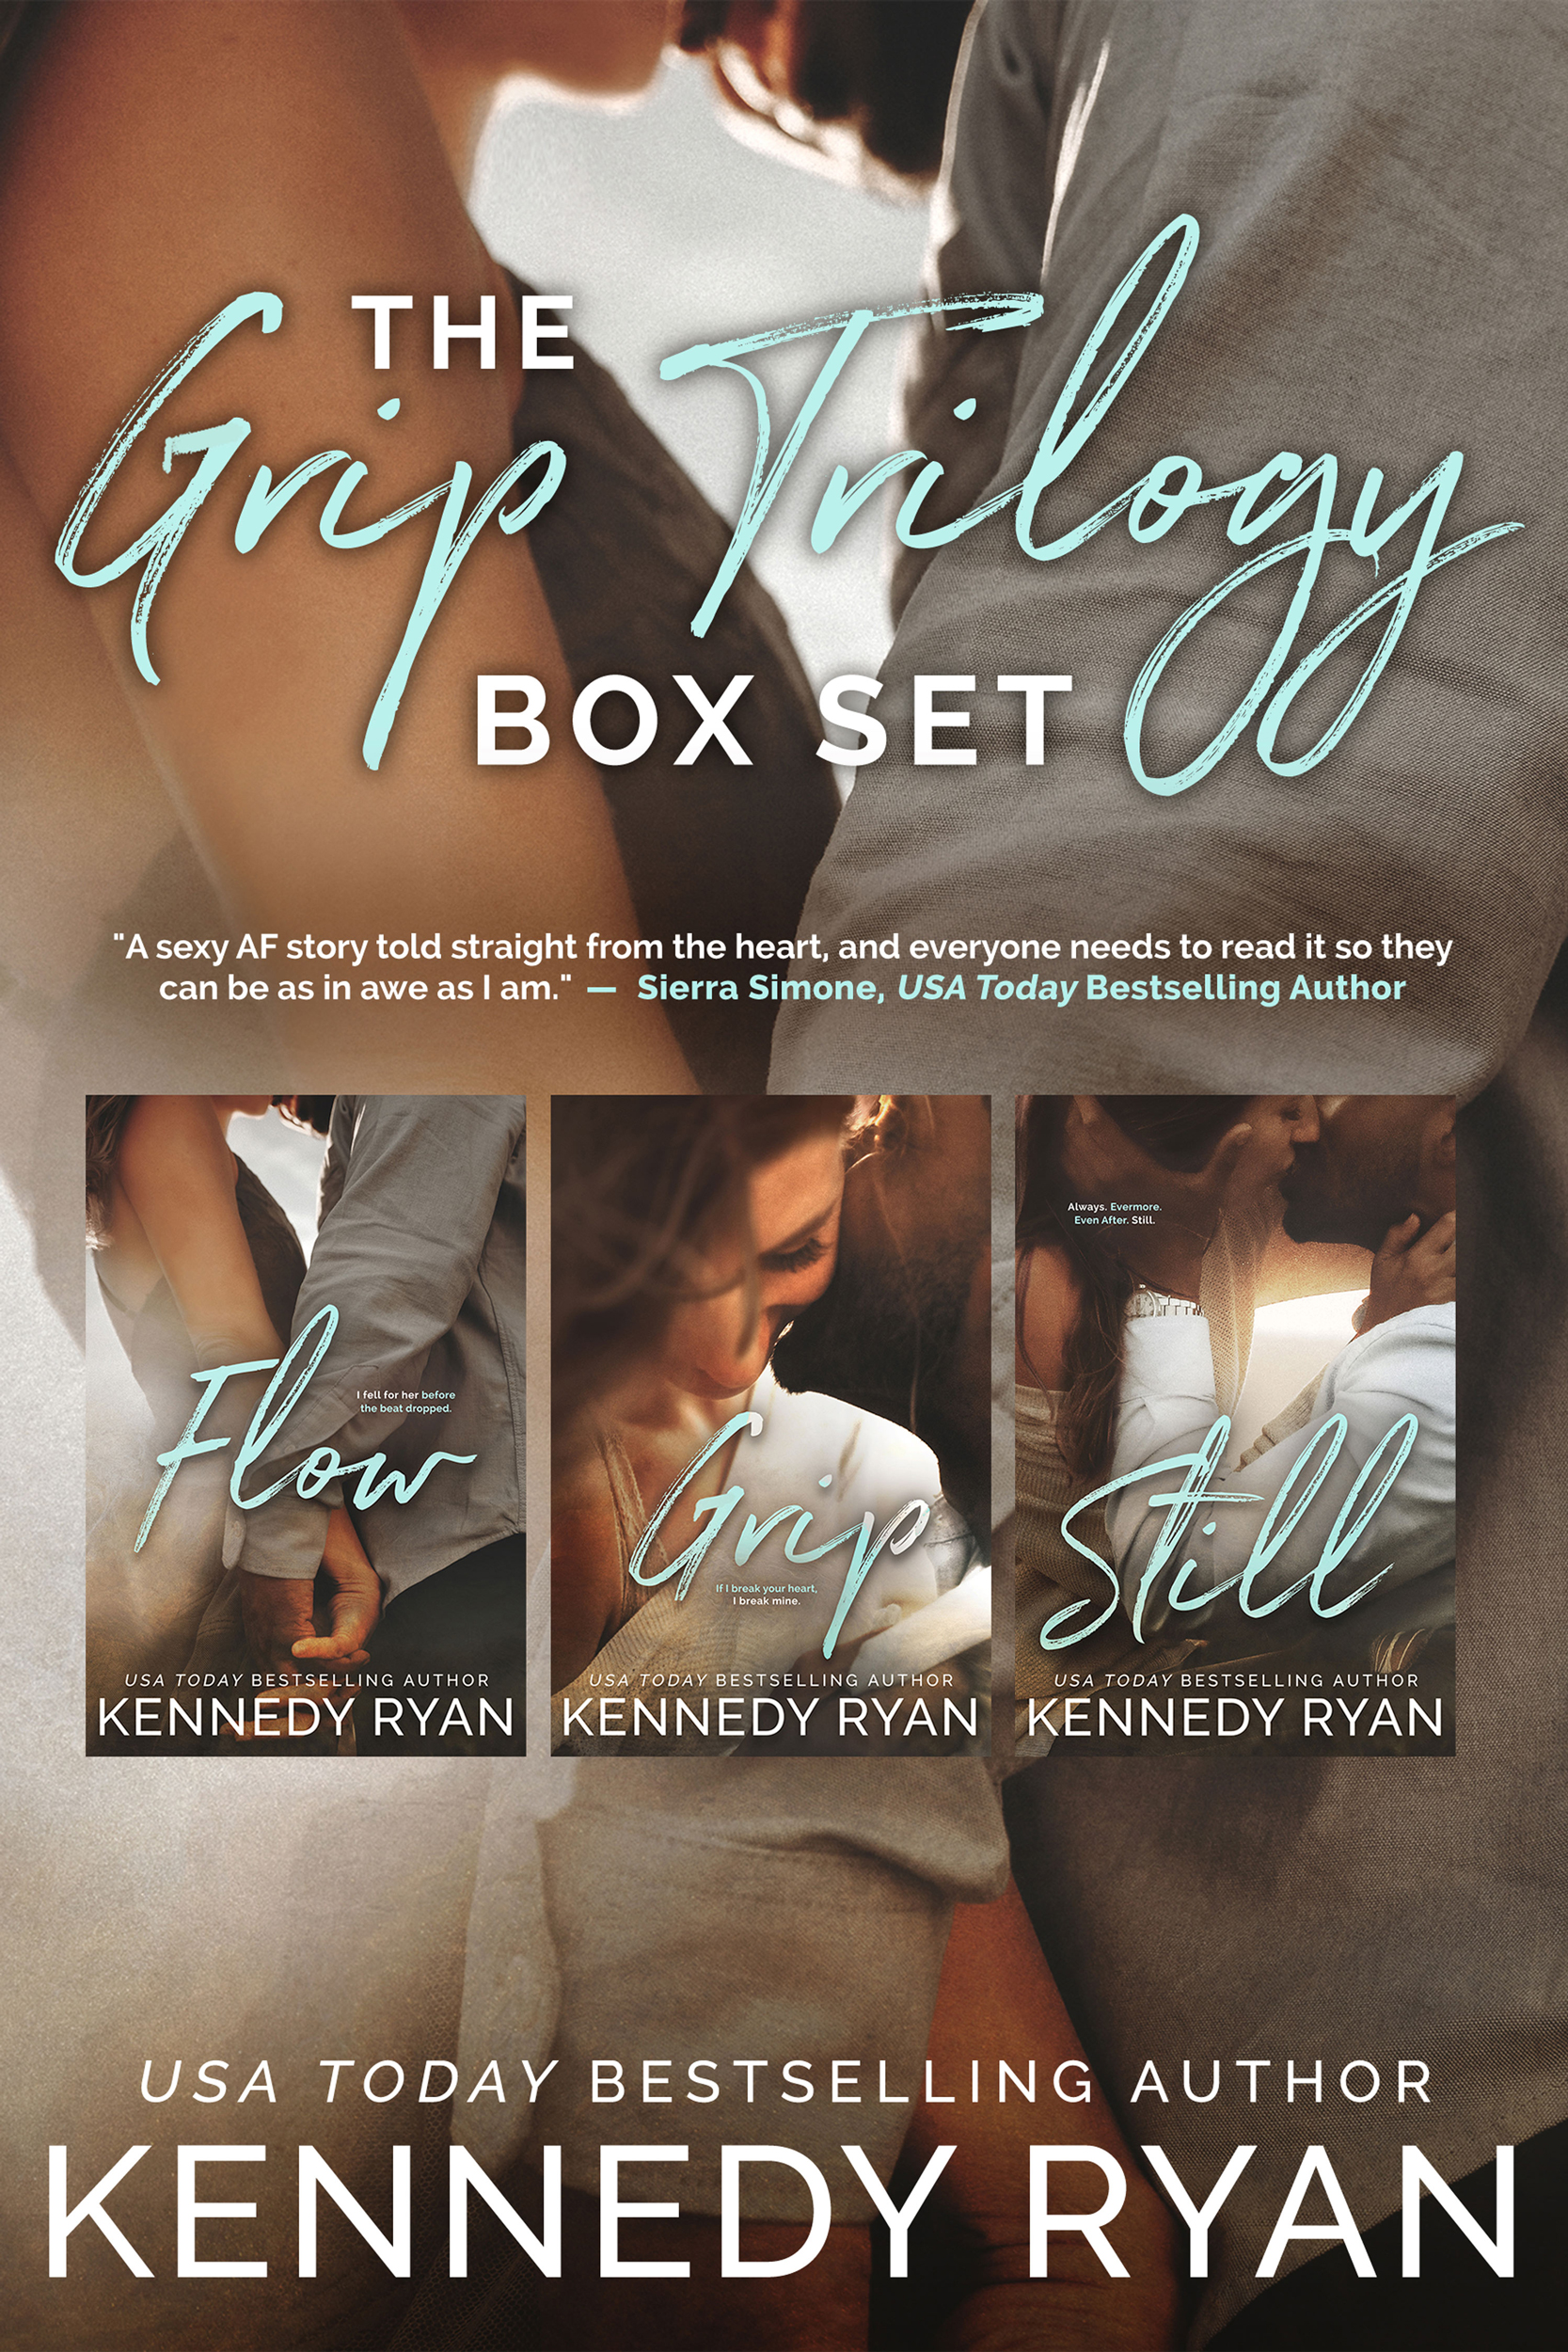 The Grip Trilogy Box Set - Kennedy Ryan